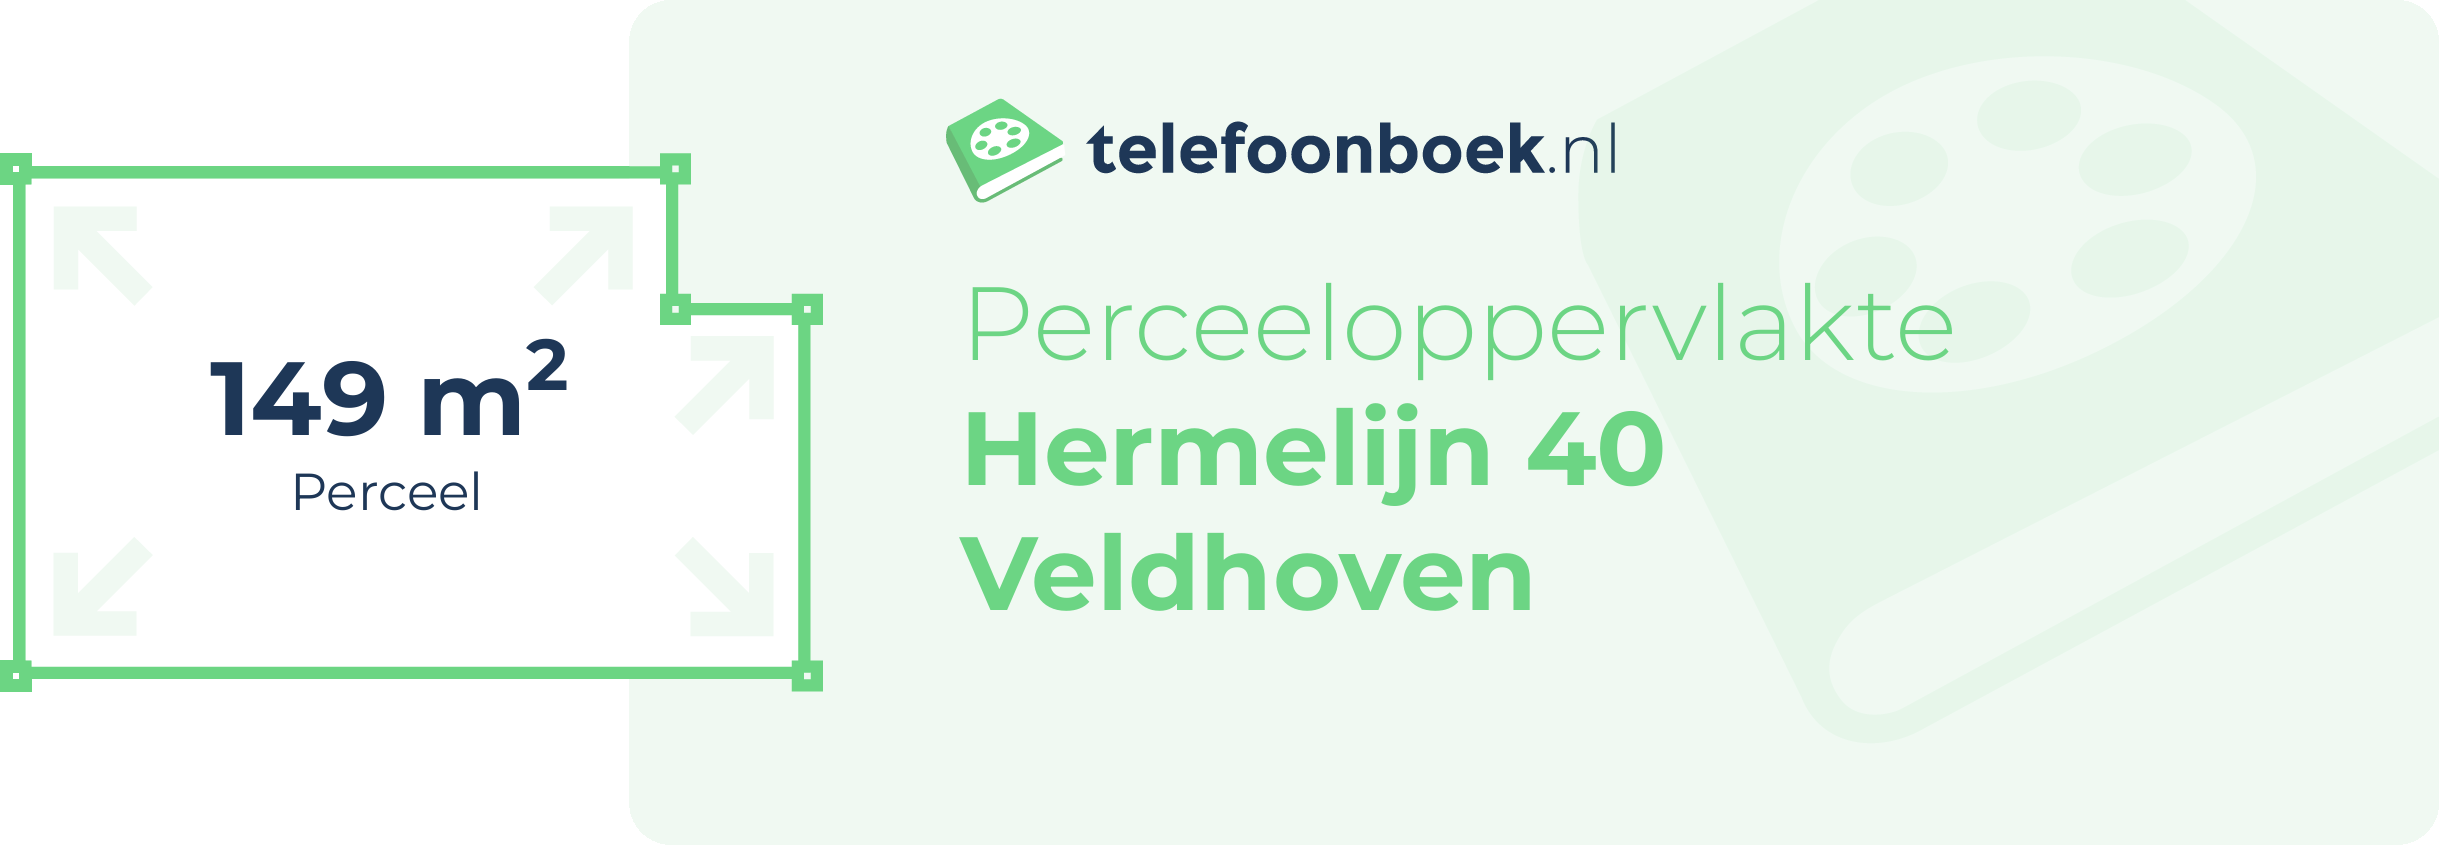 Perceeloppervlakte Hermelijn 40 Veldhoven